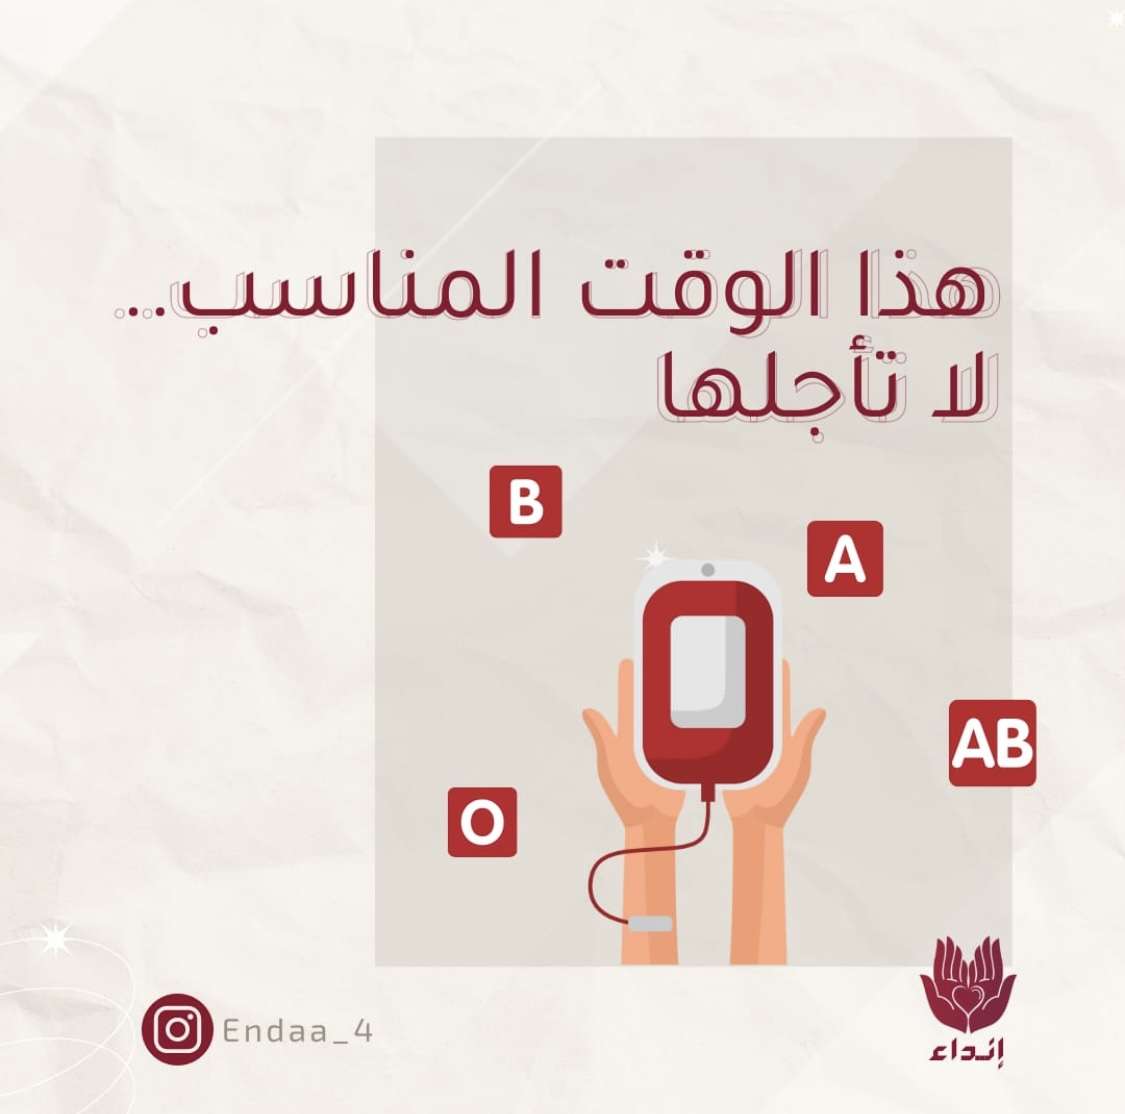 Blood donation online puzzle